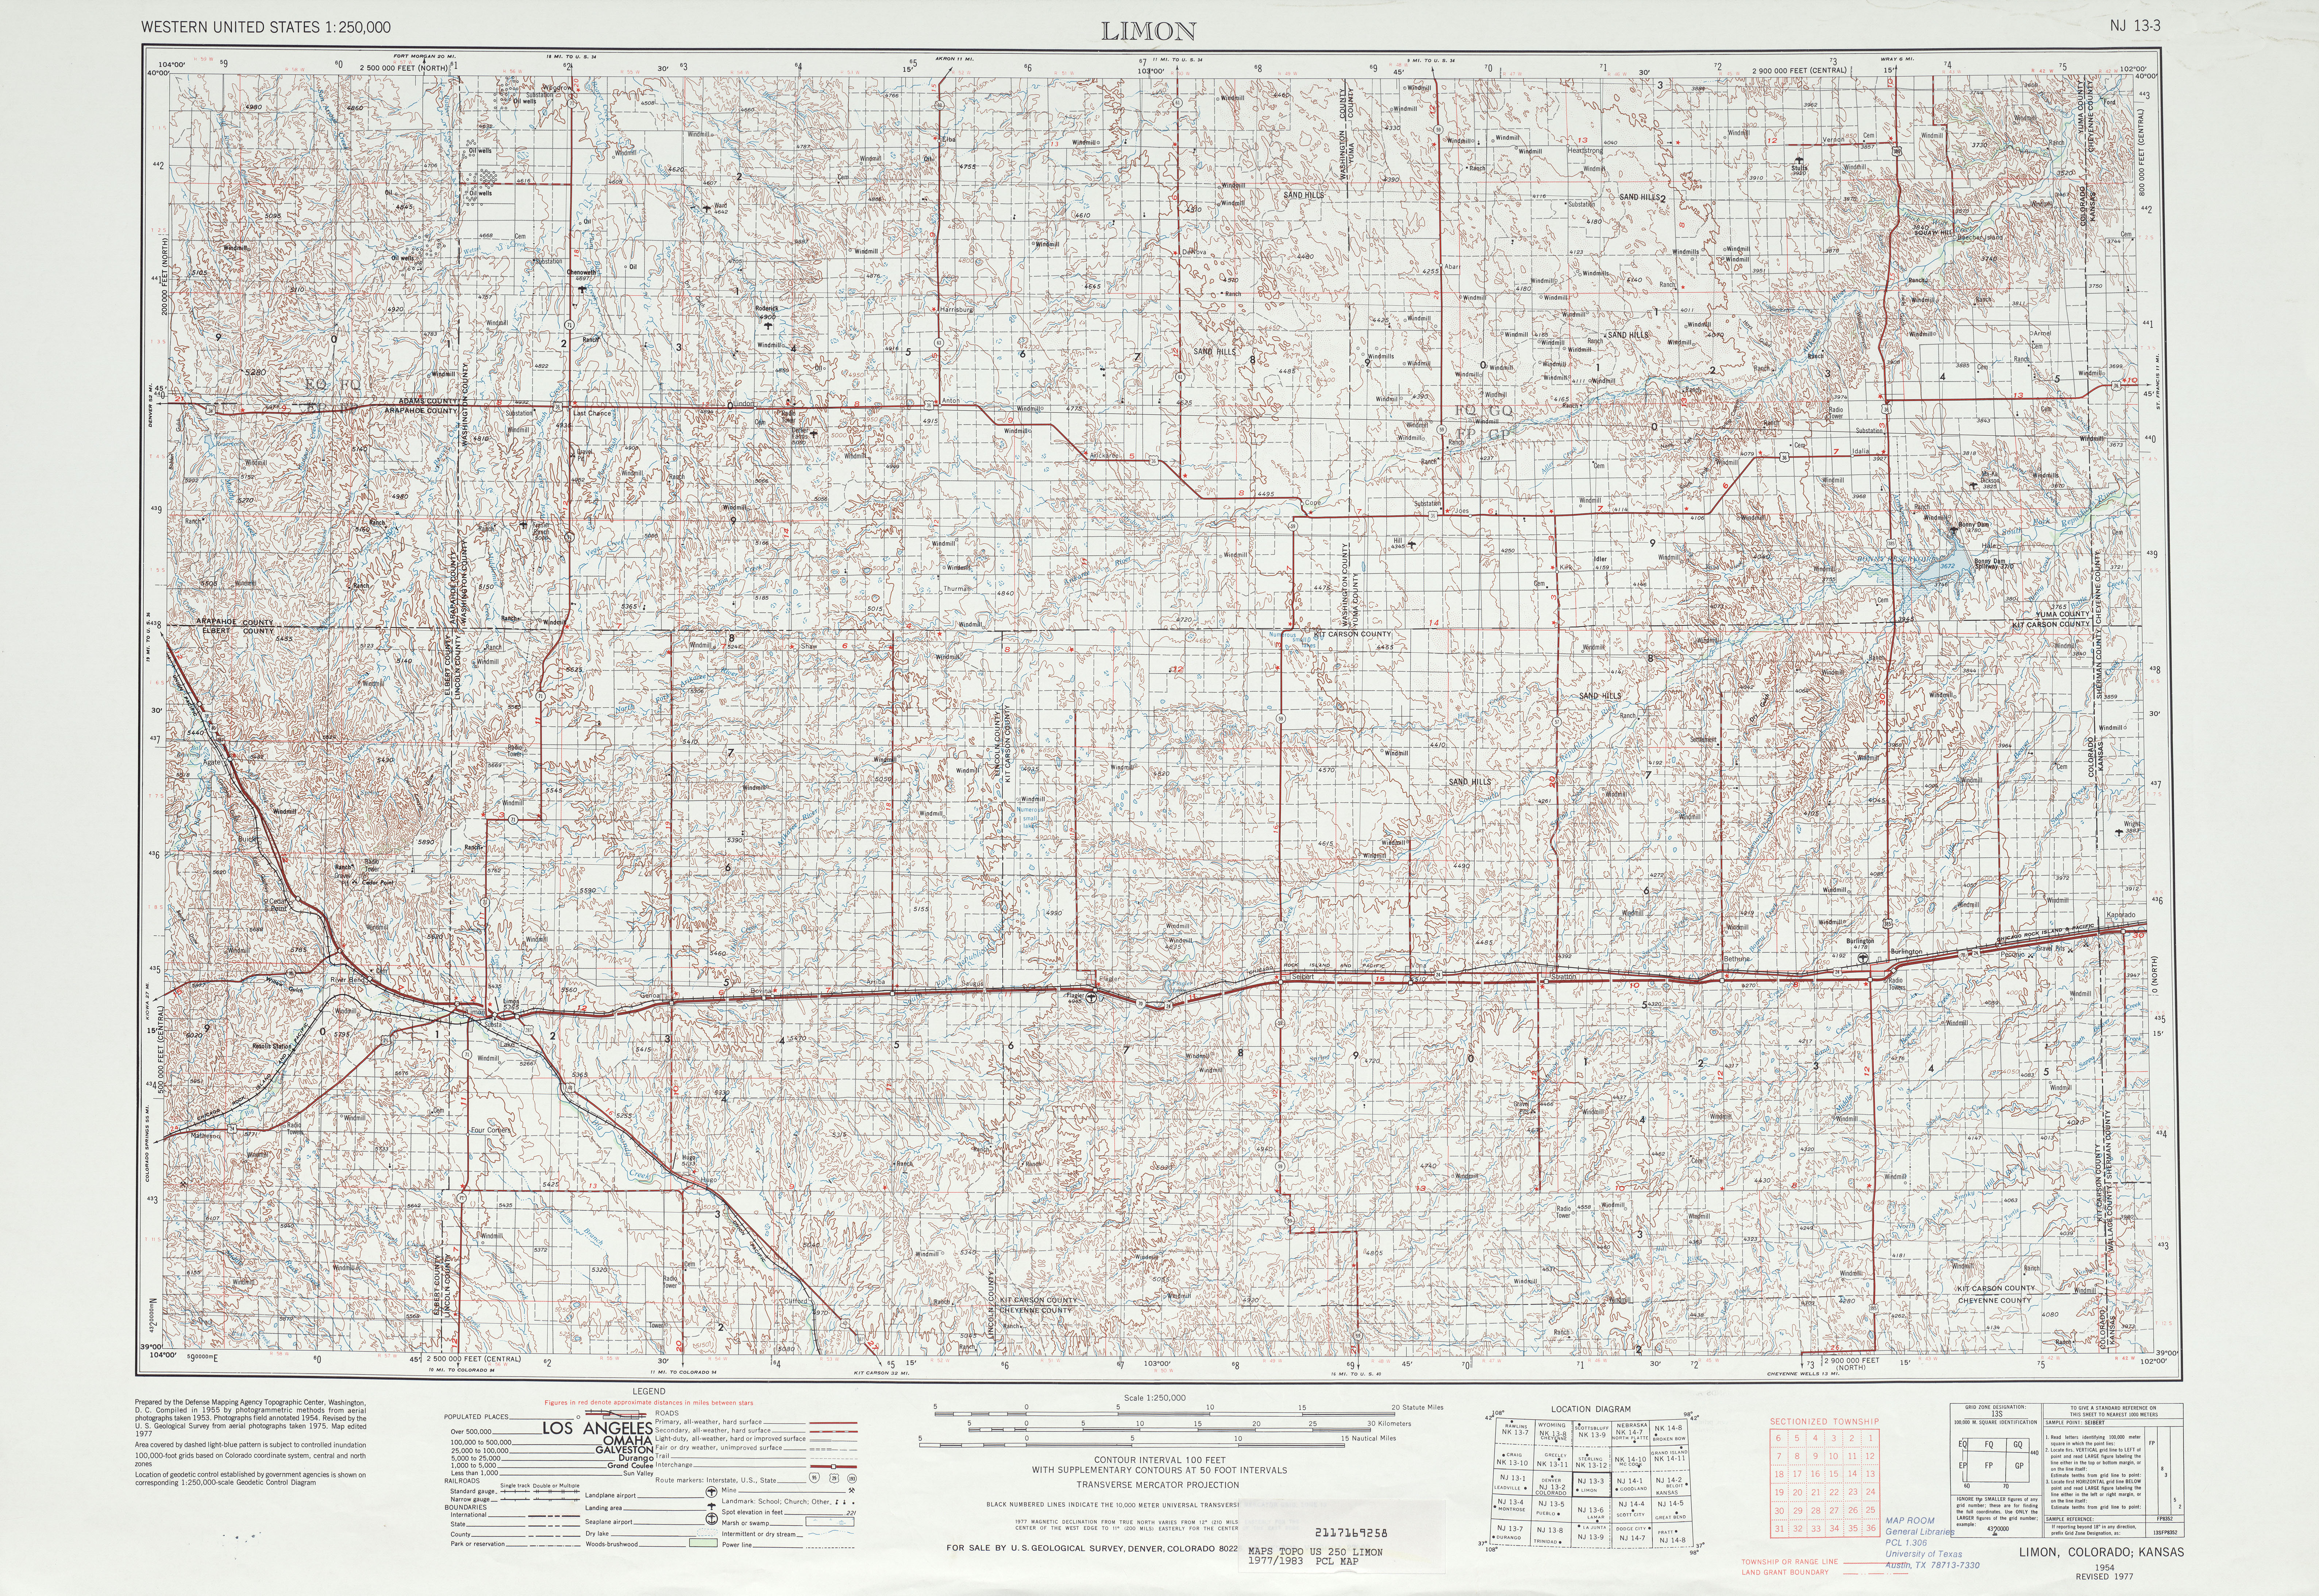 Hoja Limon del Mapa Topográfico de los Estados Unidos 1977